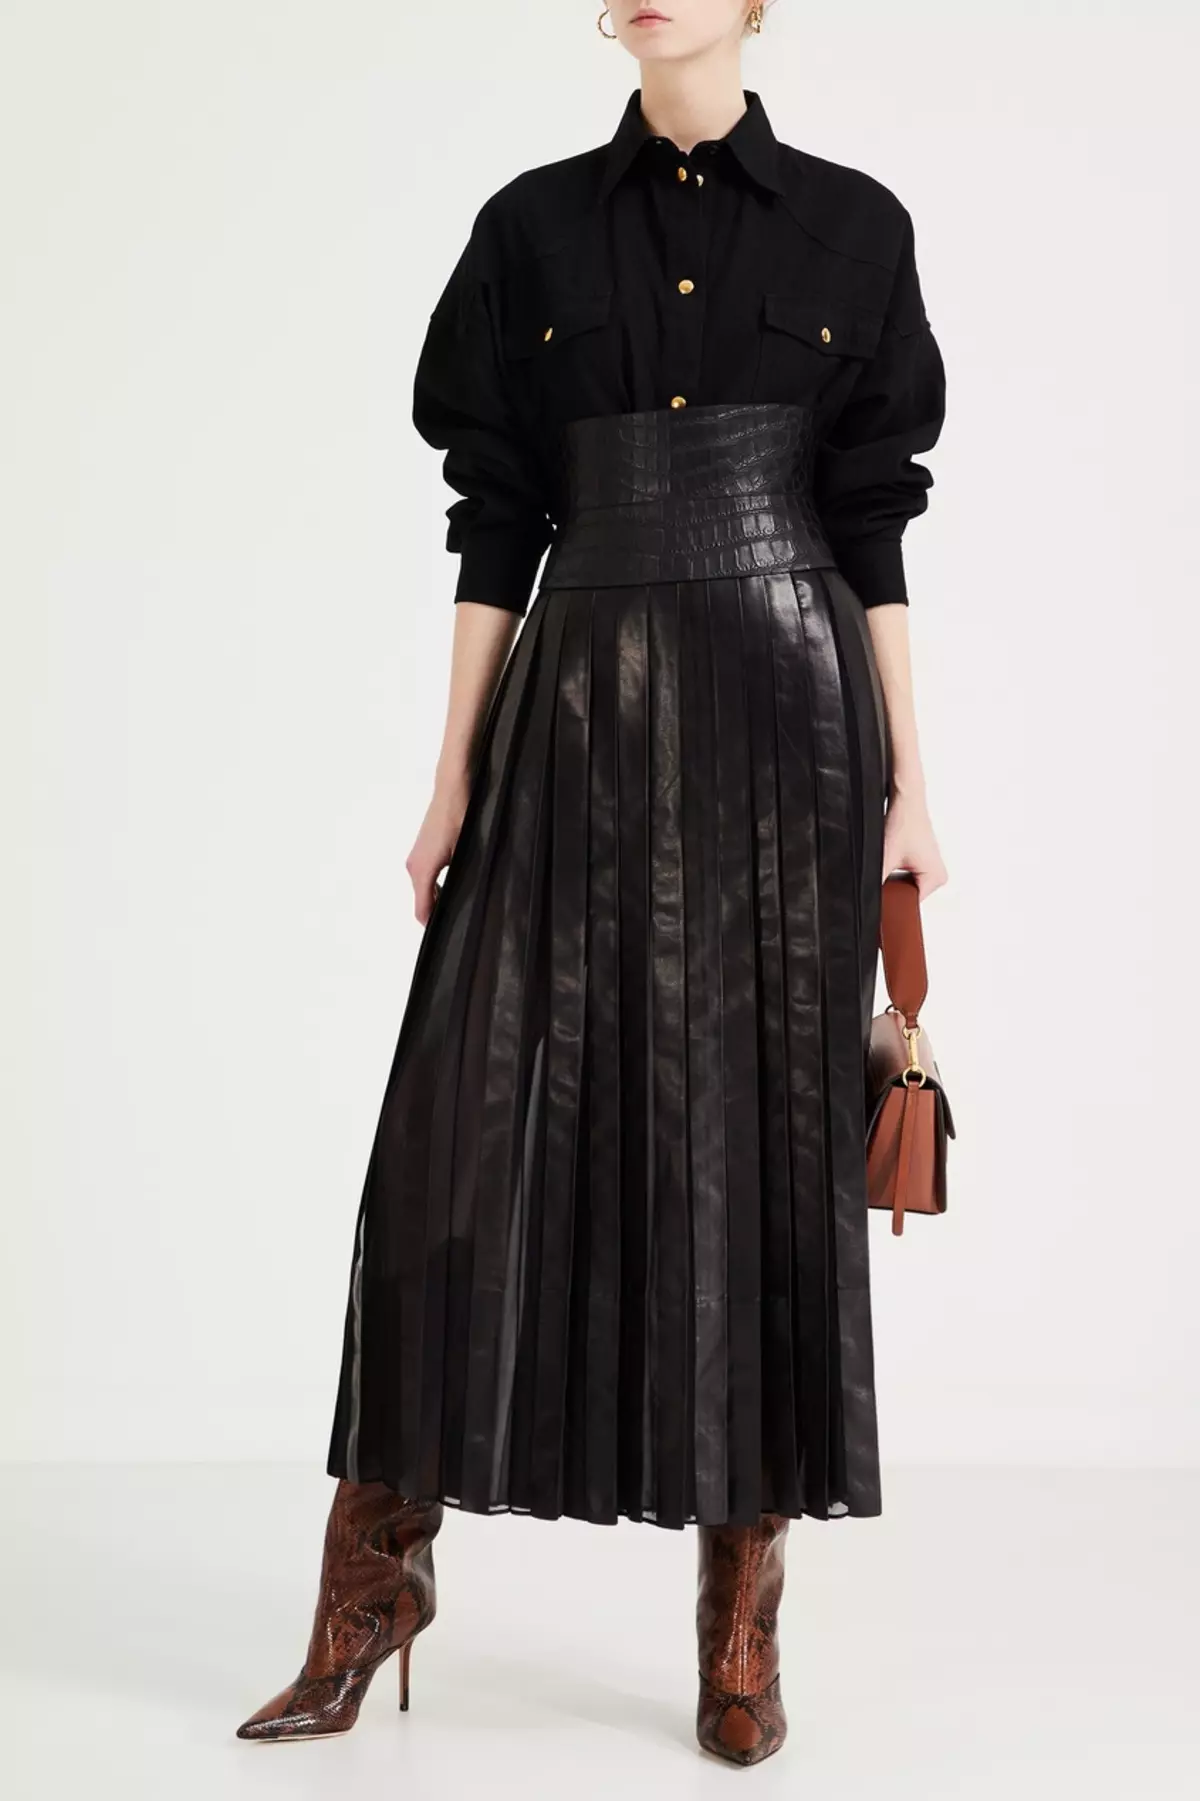 Placs Skirt Kulit: Apa yang perlu dipakai Rok Eco-Piece Pleated? Imej dengan skirt kulit tiruan hitam dan coklat 800_7